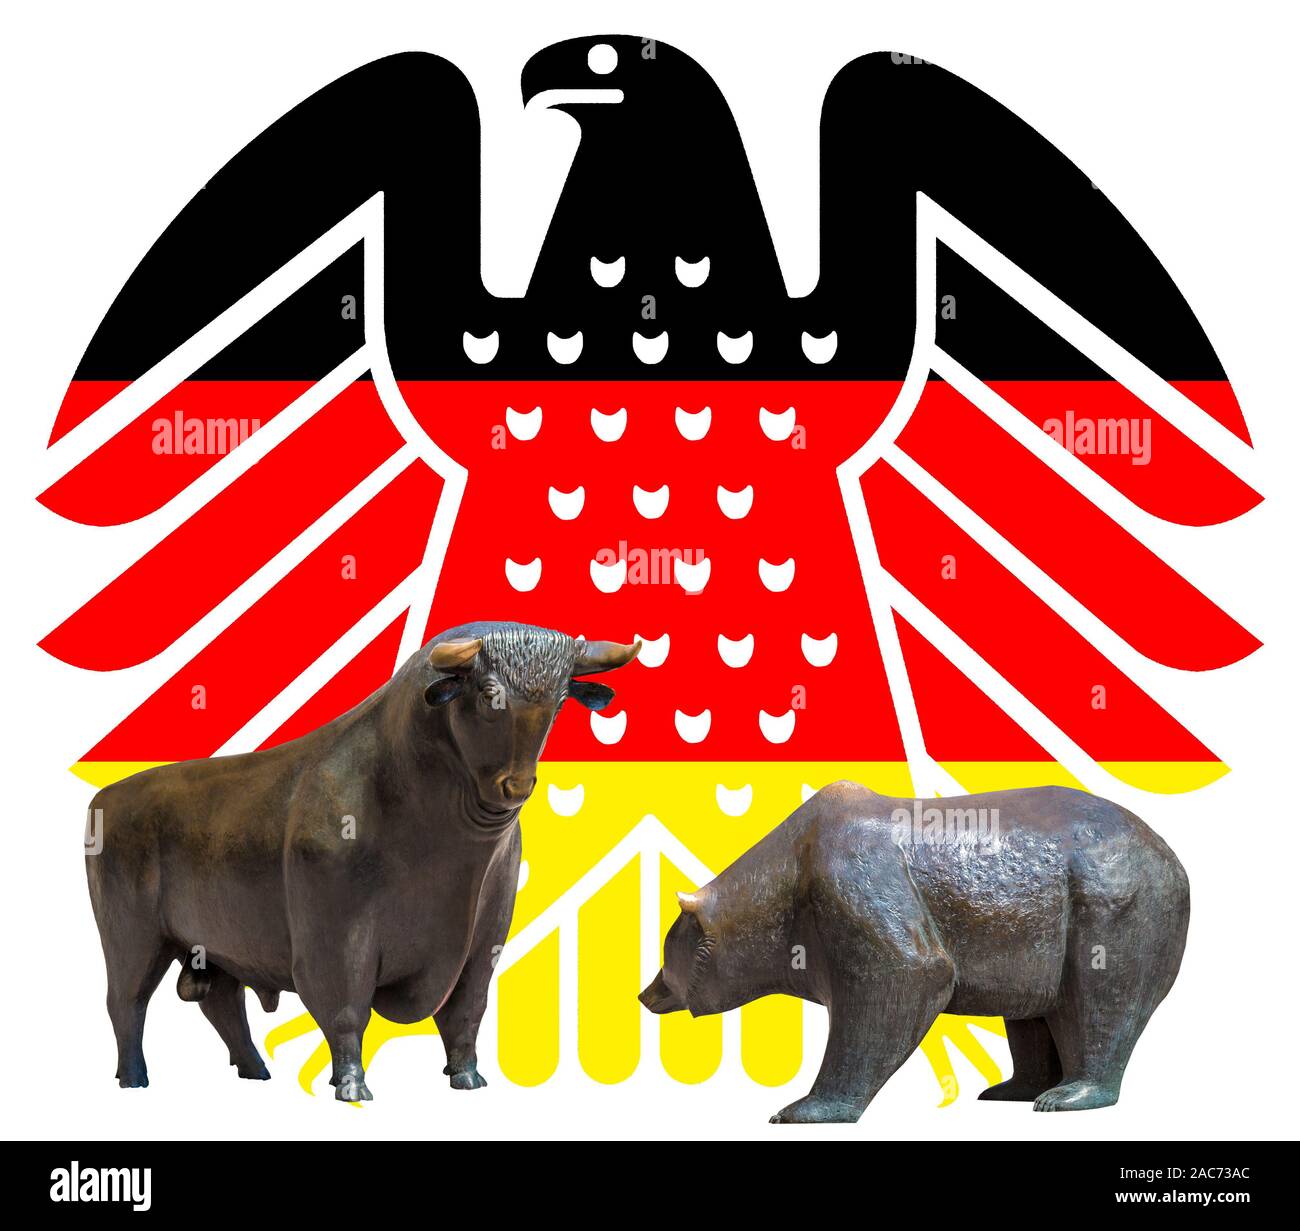 Neuer Bundesadler in den Farben schwarz-rot-gold, Wappentier der Bundesrepublik Deutschland, davor die Boersensymbole Bulle und Baer, Stock Photo